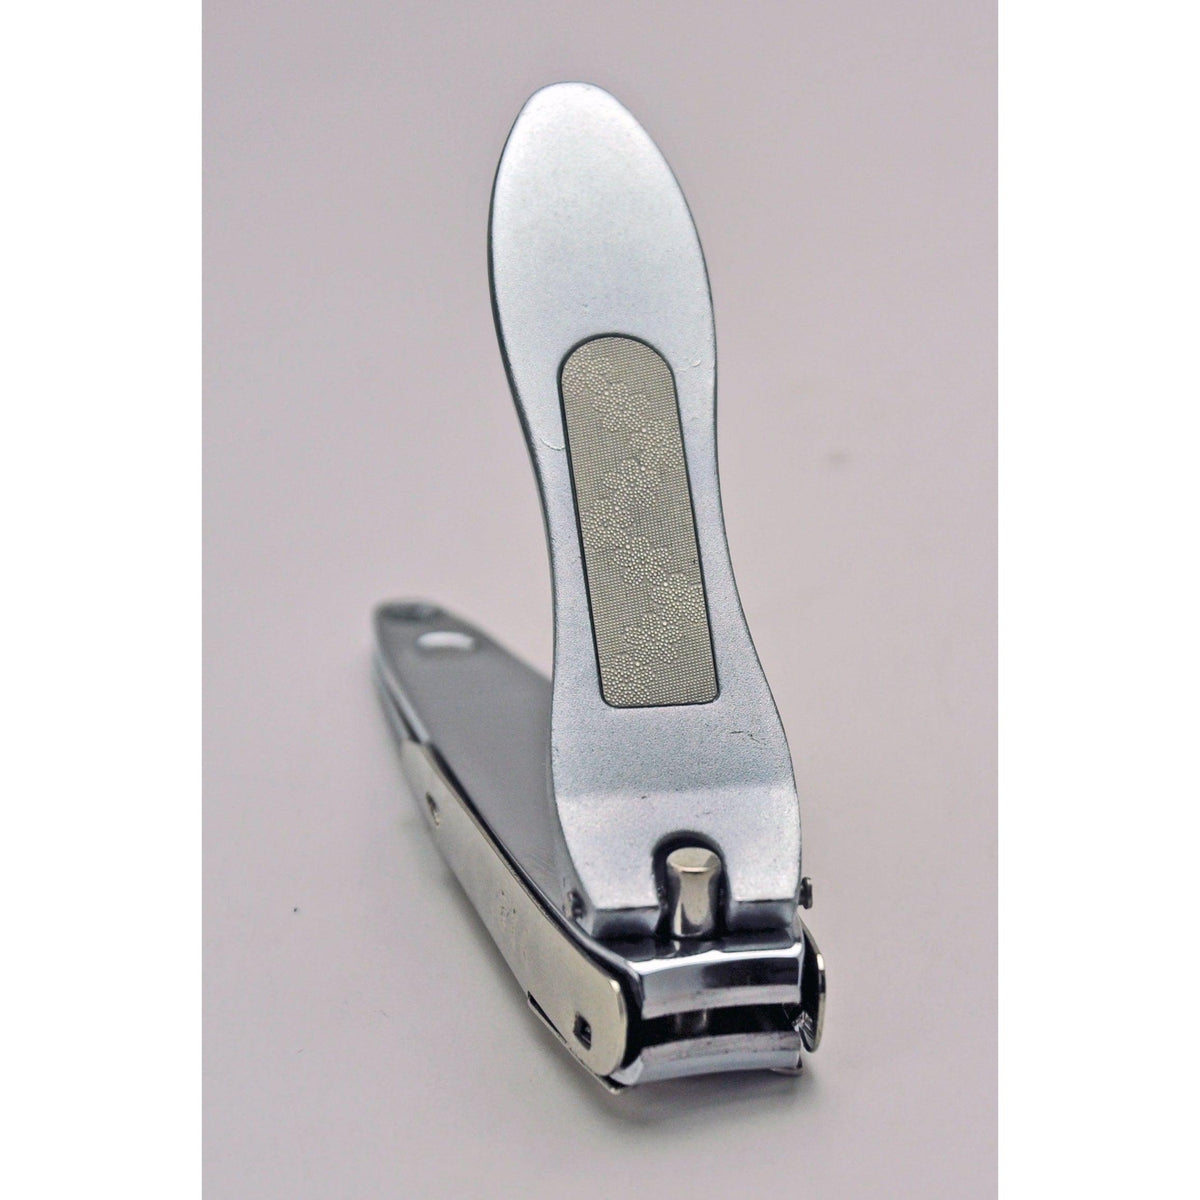 Nt cutter Premium Cutter 18 mm Silver